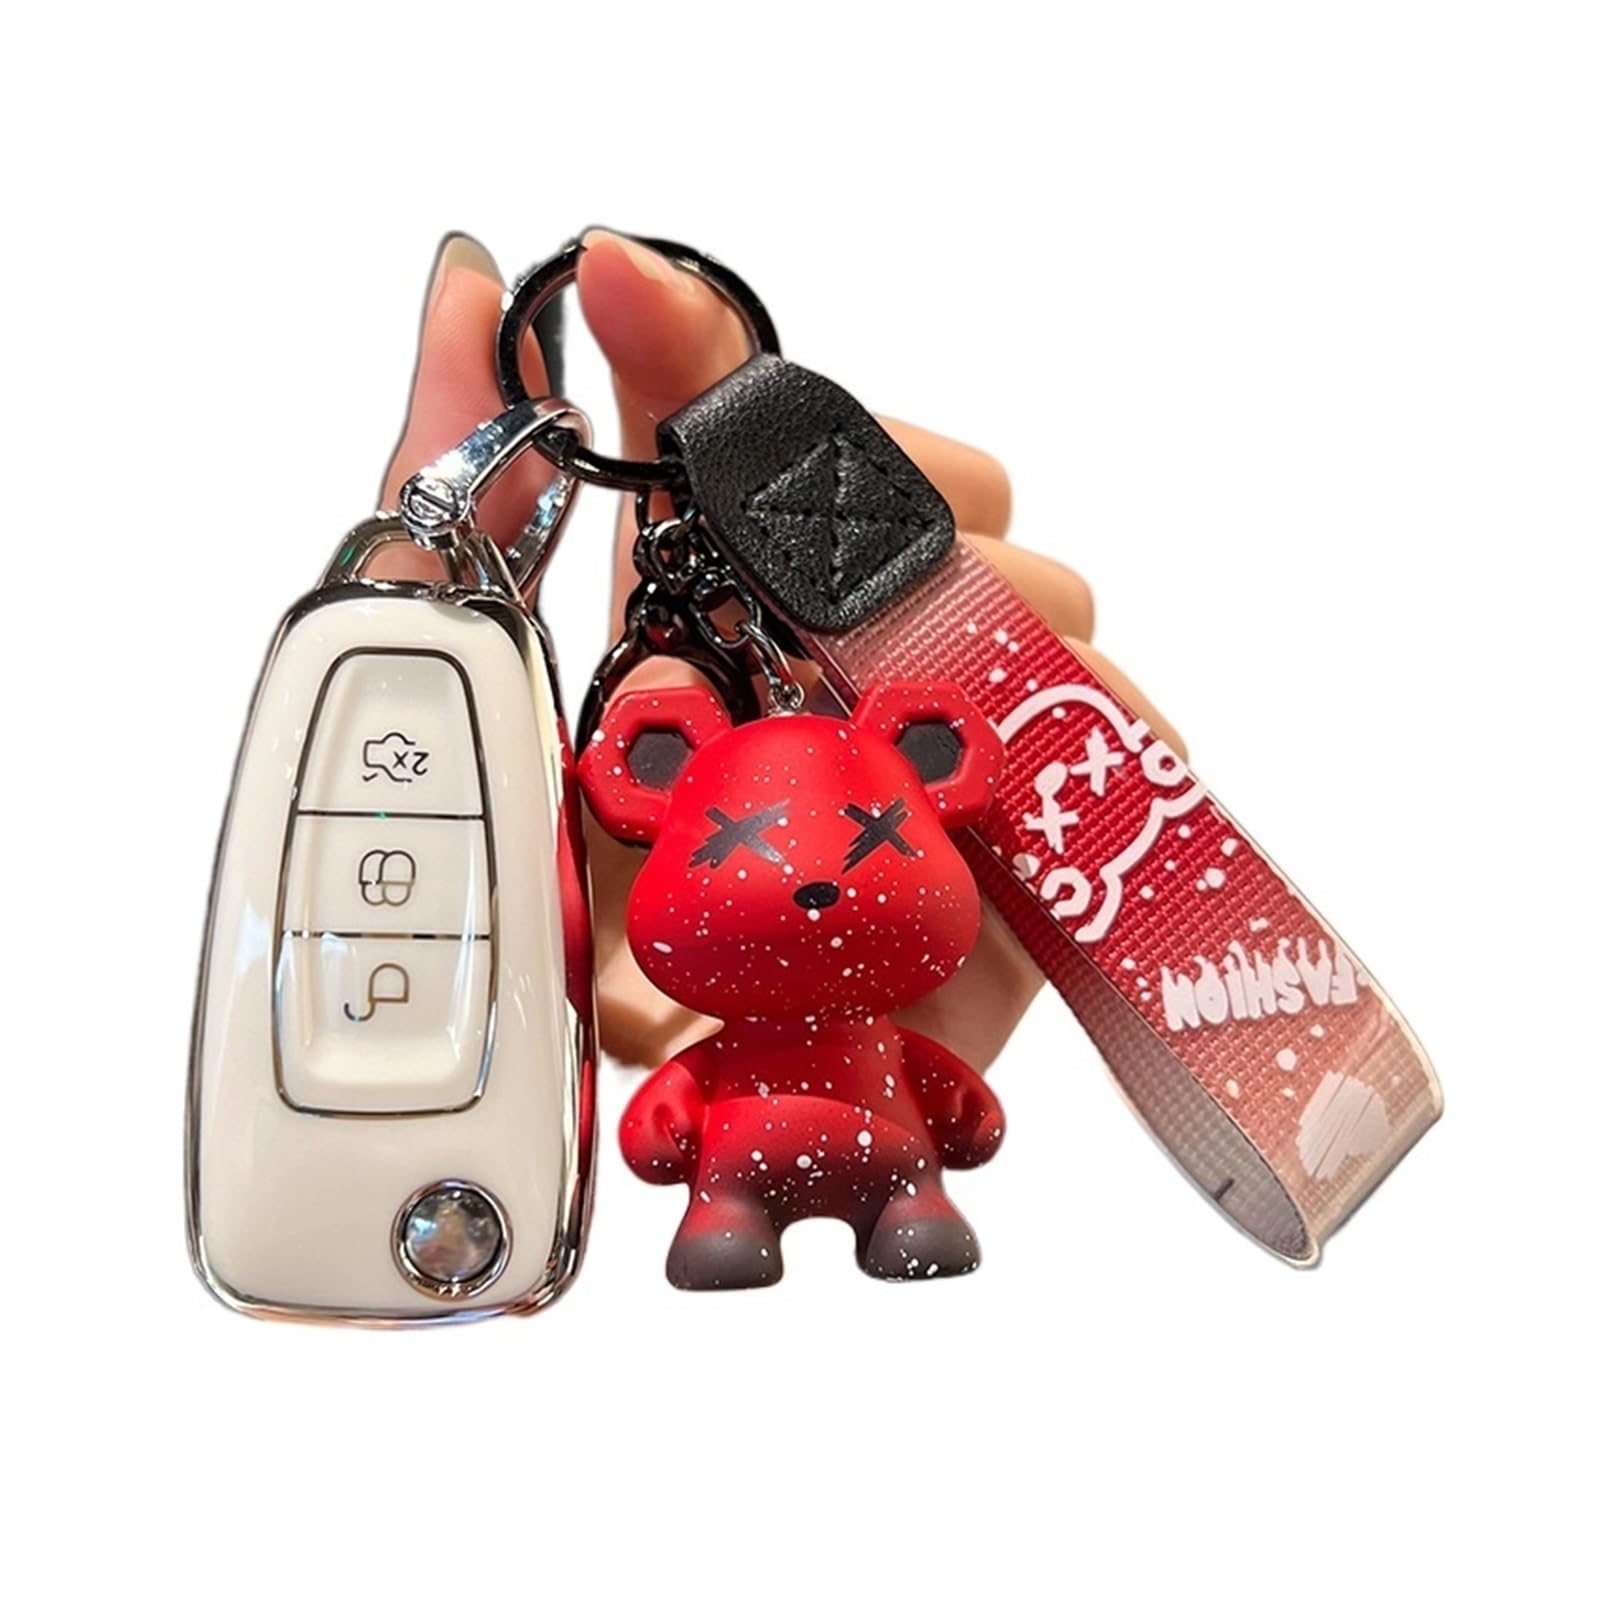 Autoschlüsselgehäuse, Schlüsselanhänger-Hülle mit Schlüsselanhänger, kompatibel mit Mondeo C-Max S-Max Focus Fiesta Ranger 2011 2012 2013 2014 2015 Zubehör(White red) von MCLlt